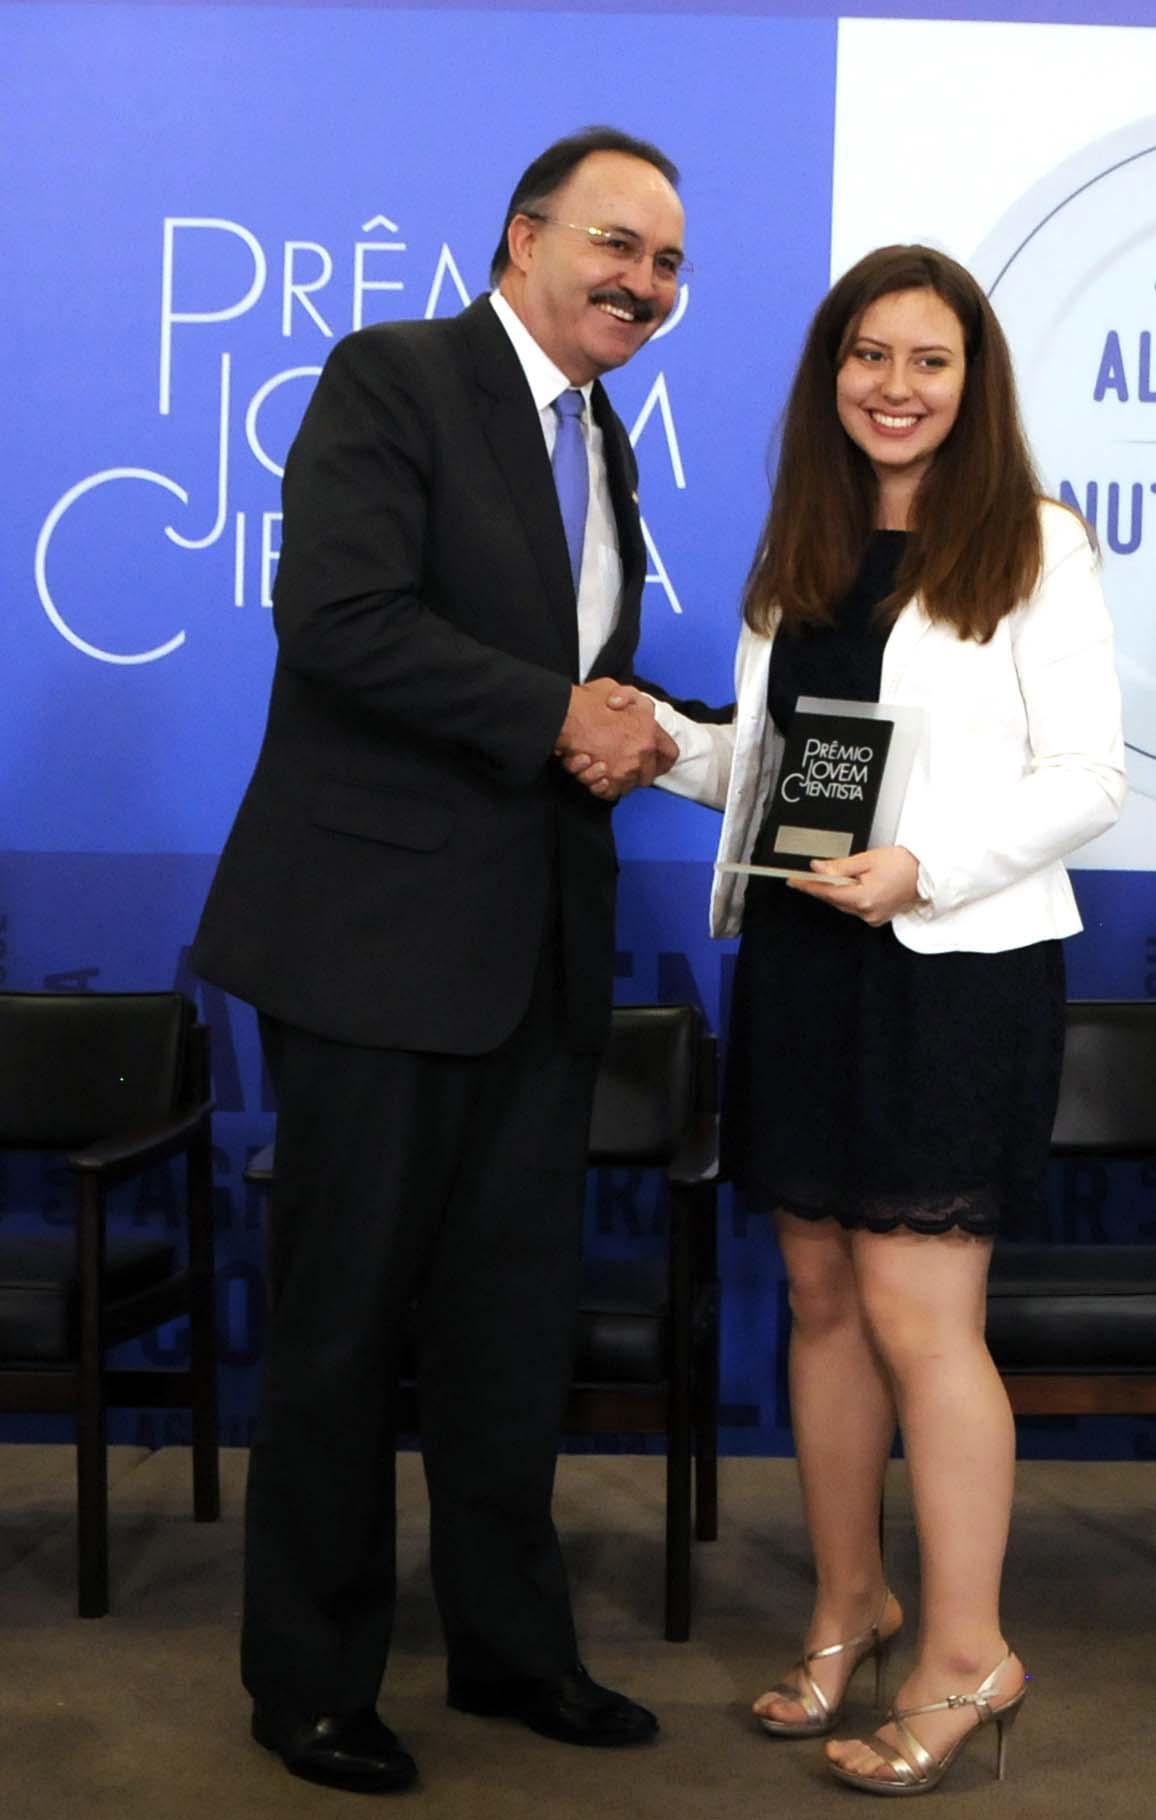  Entrega do Prêmio Jovem Cientista 2015